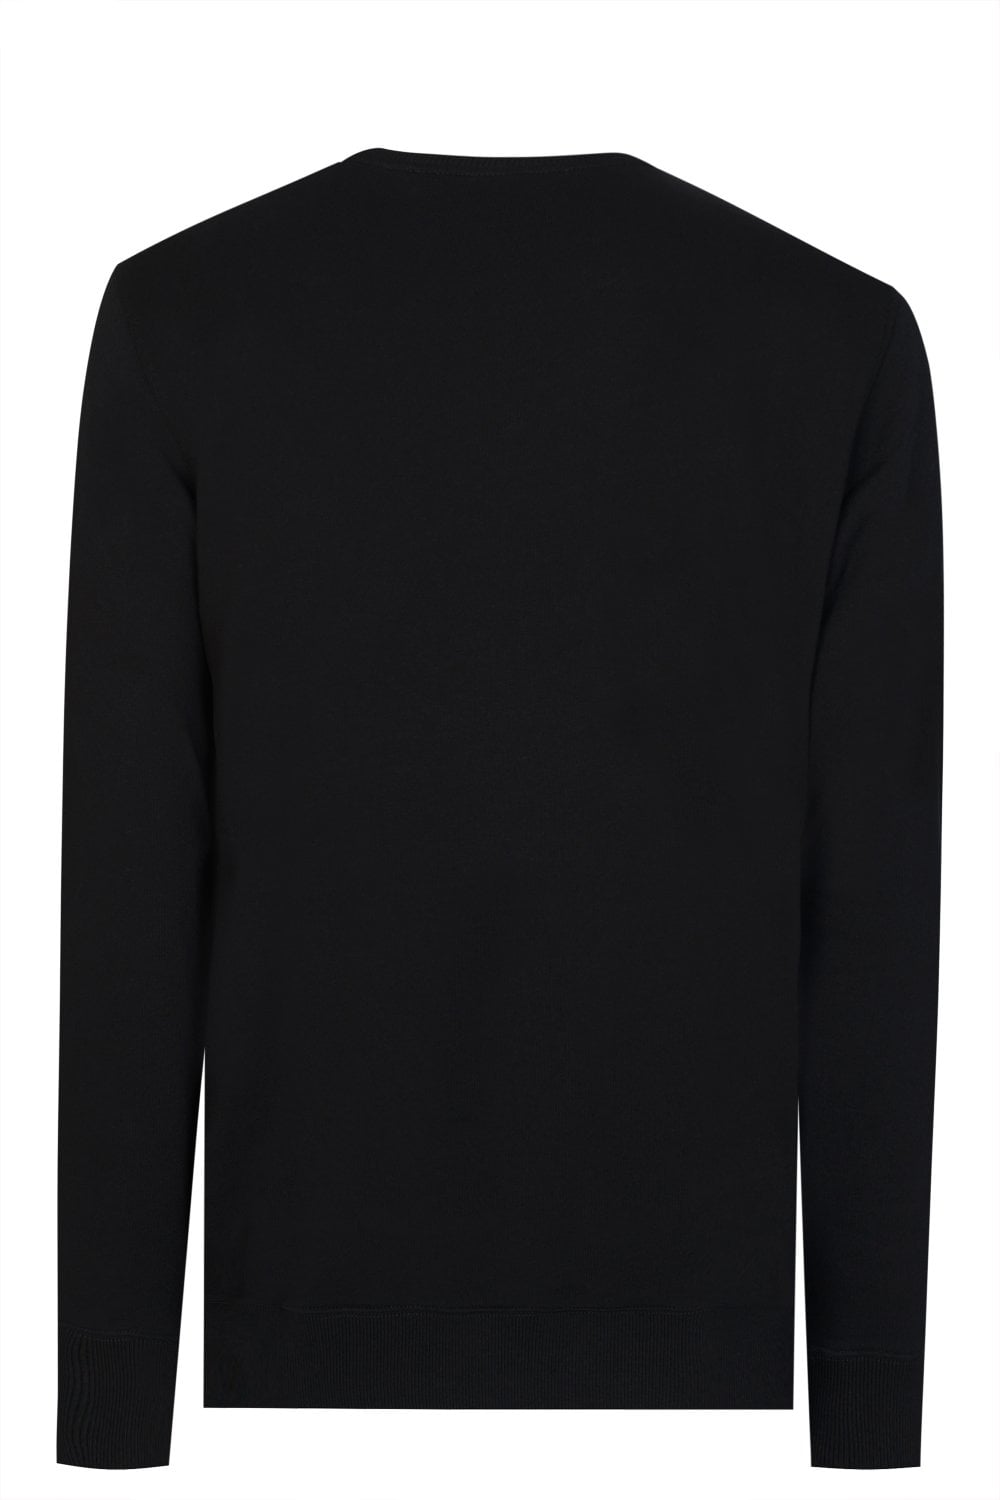 Givenchy Paris Vintage Signature Broken Logo Sweatshirt in Black